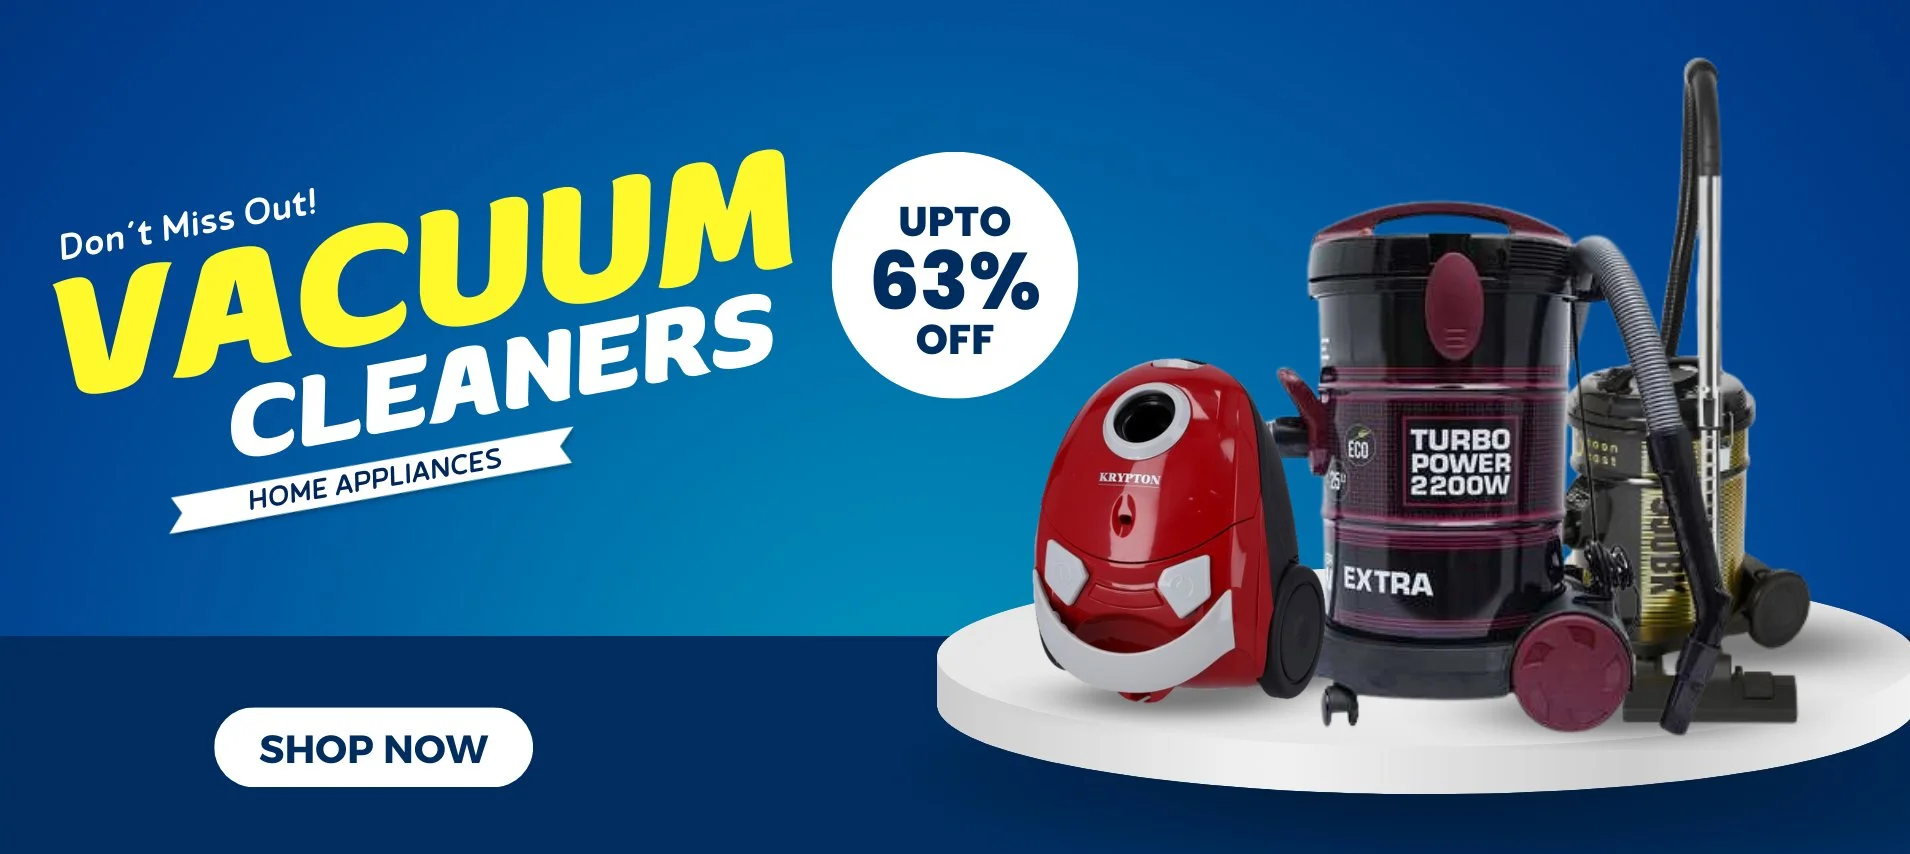 vacuum cleaner price in pakistan